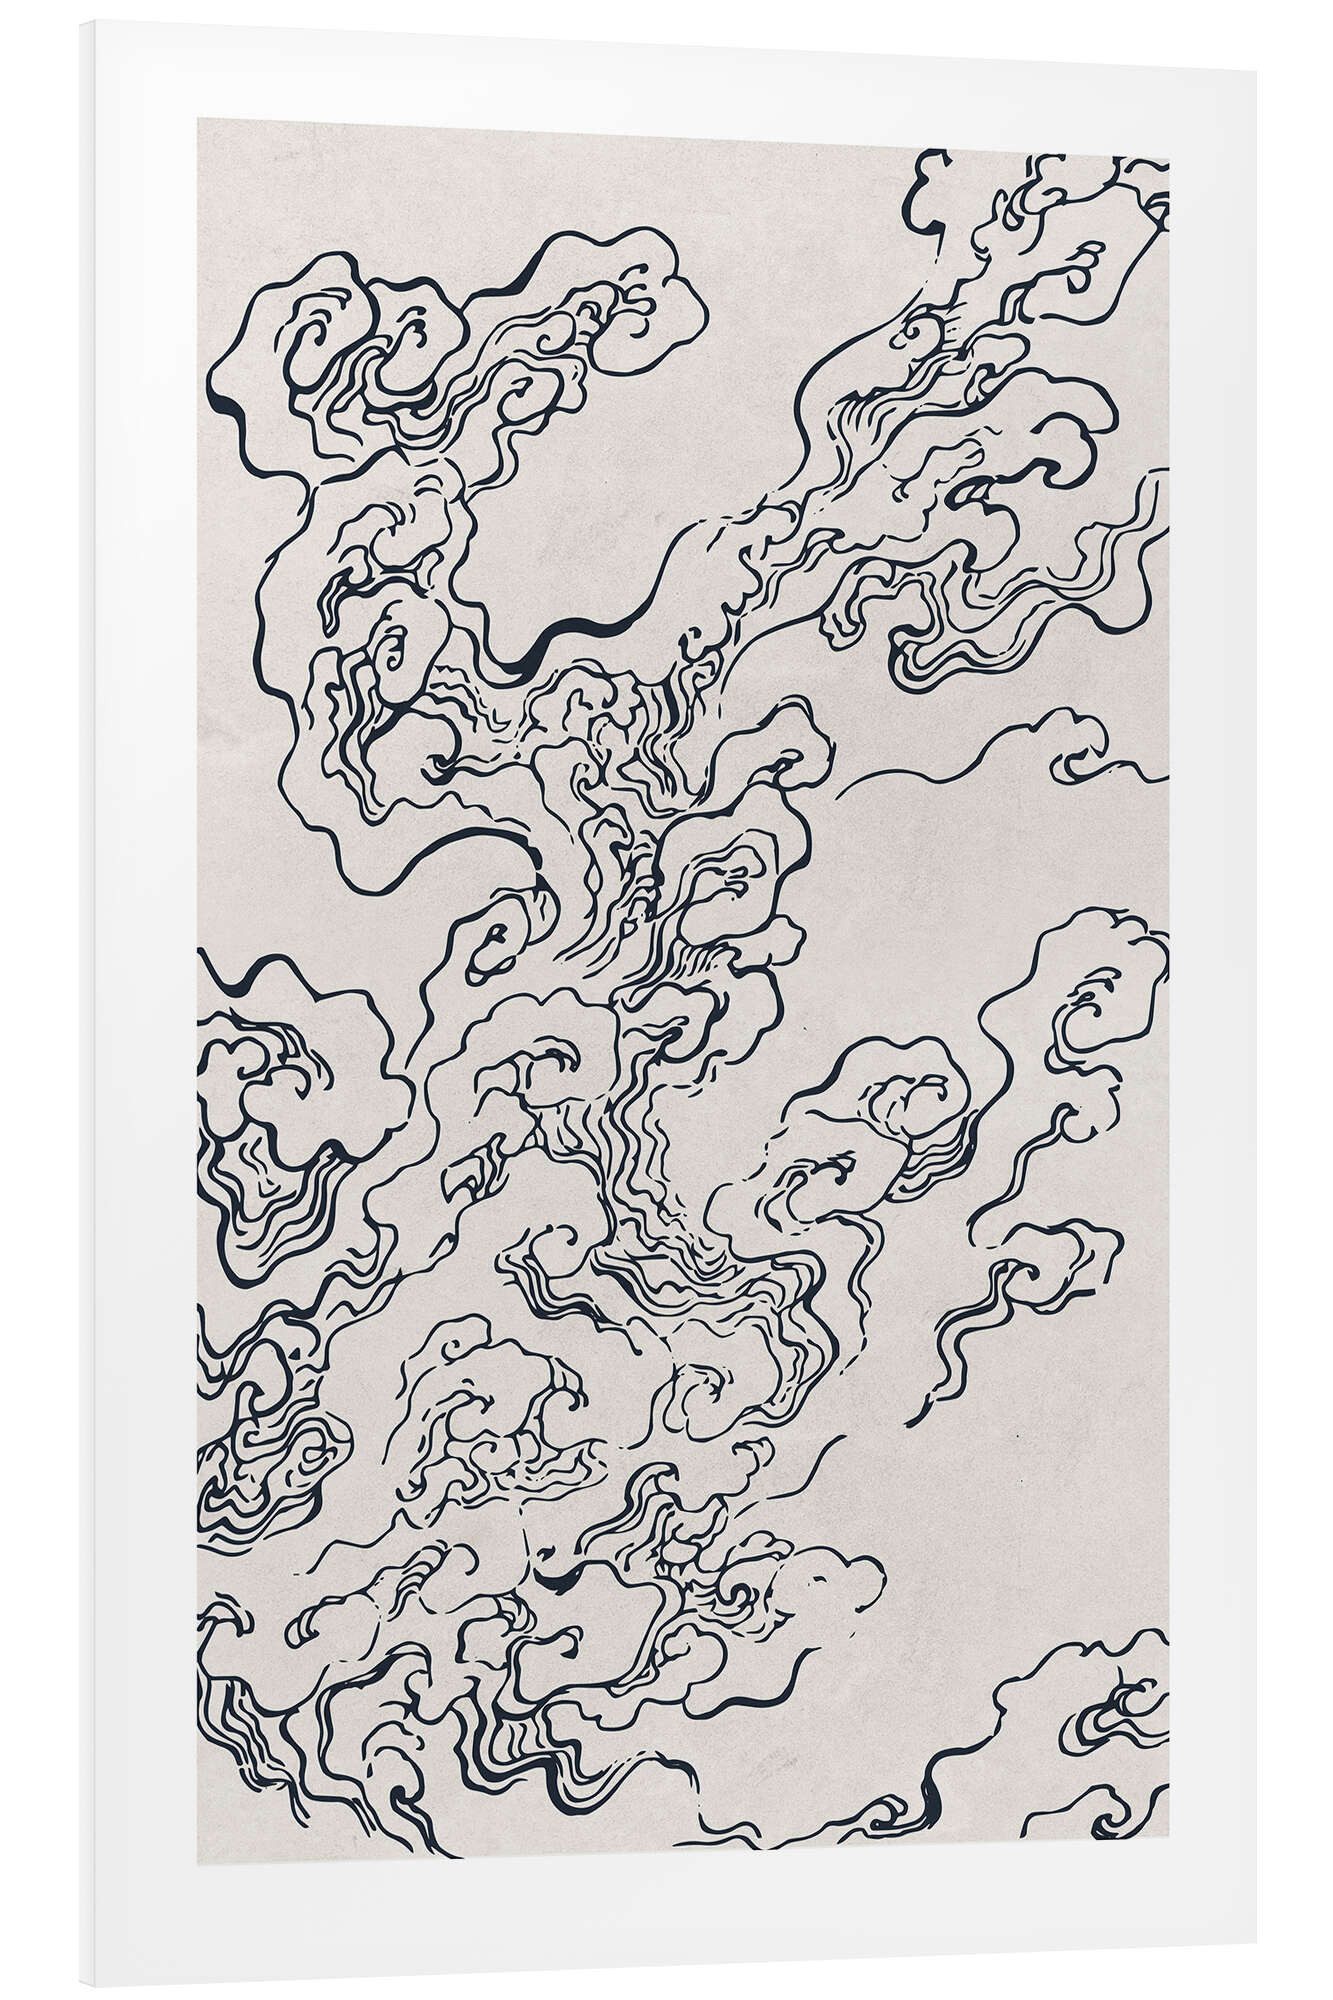 Posterlounge Forex-Bild Mori Yūzan, Wolken, Wohnzimmer Modern Illustration